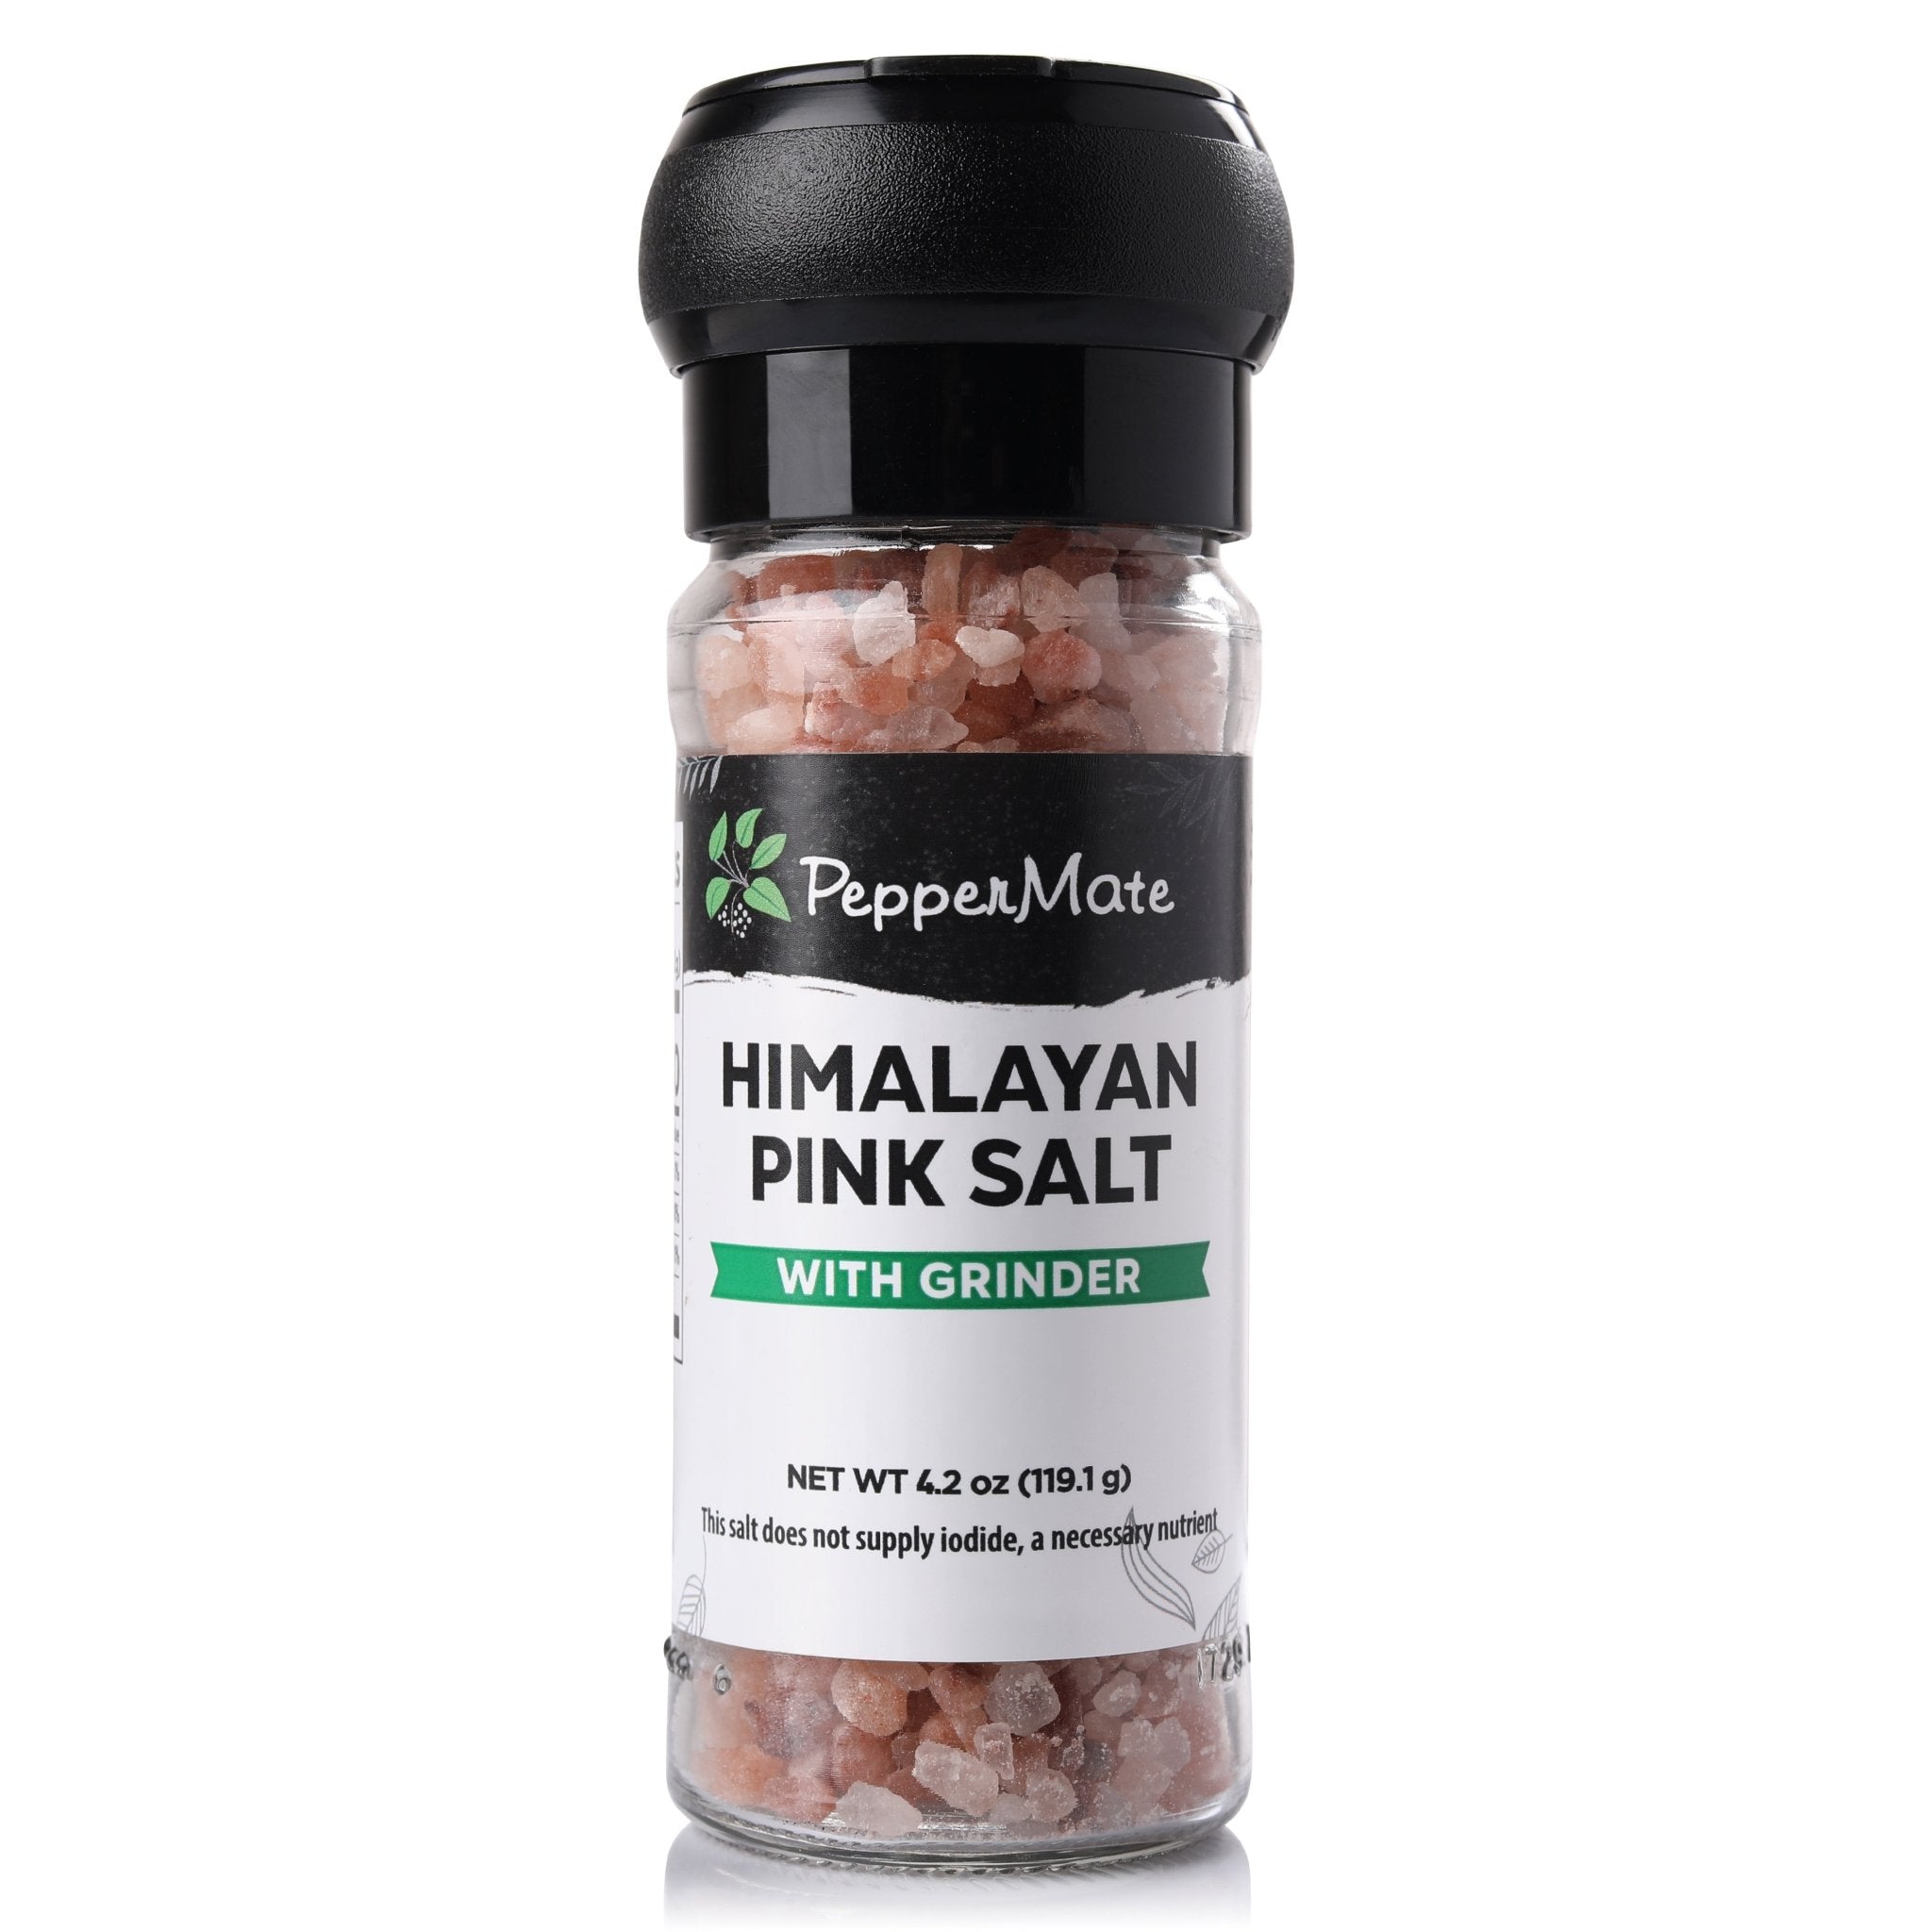 Himalayan Pink Salt, Mill Grind